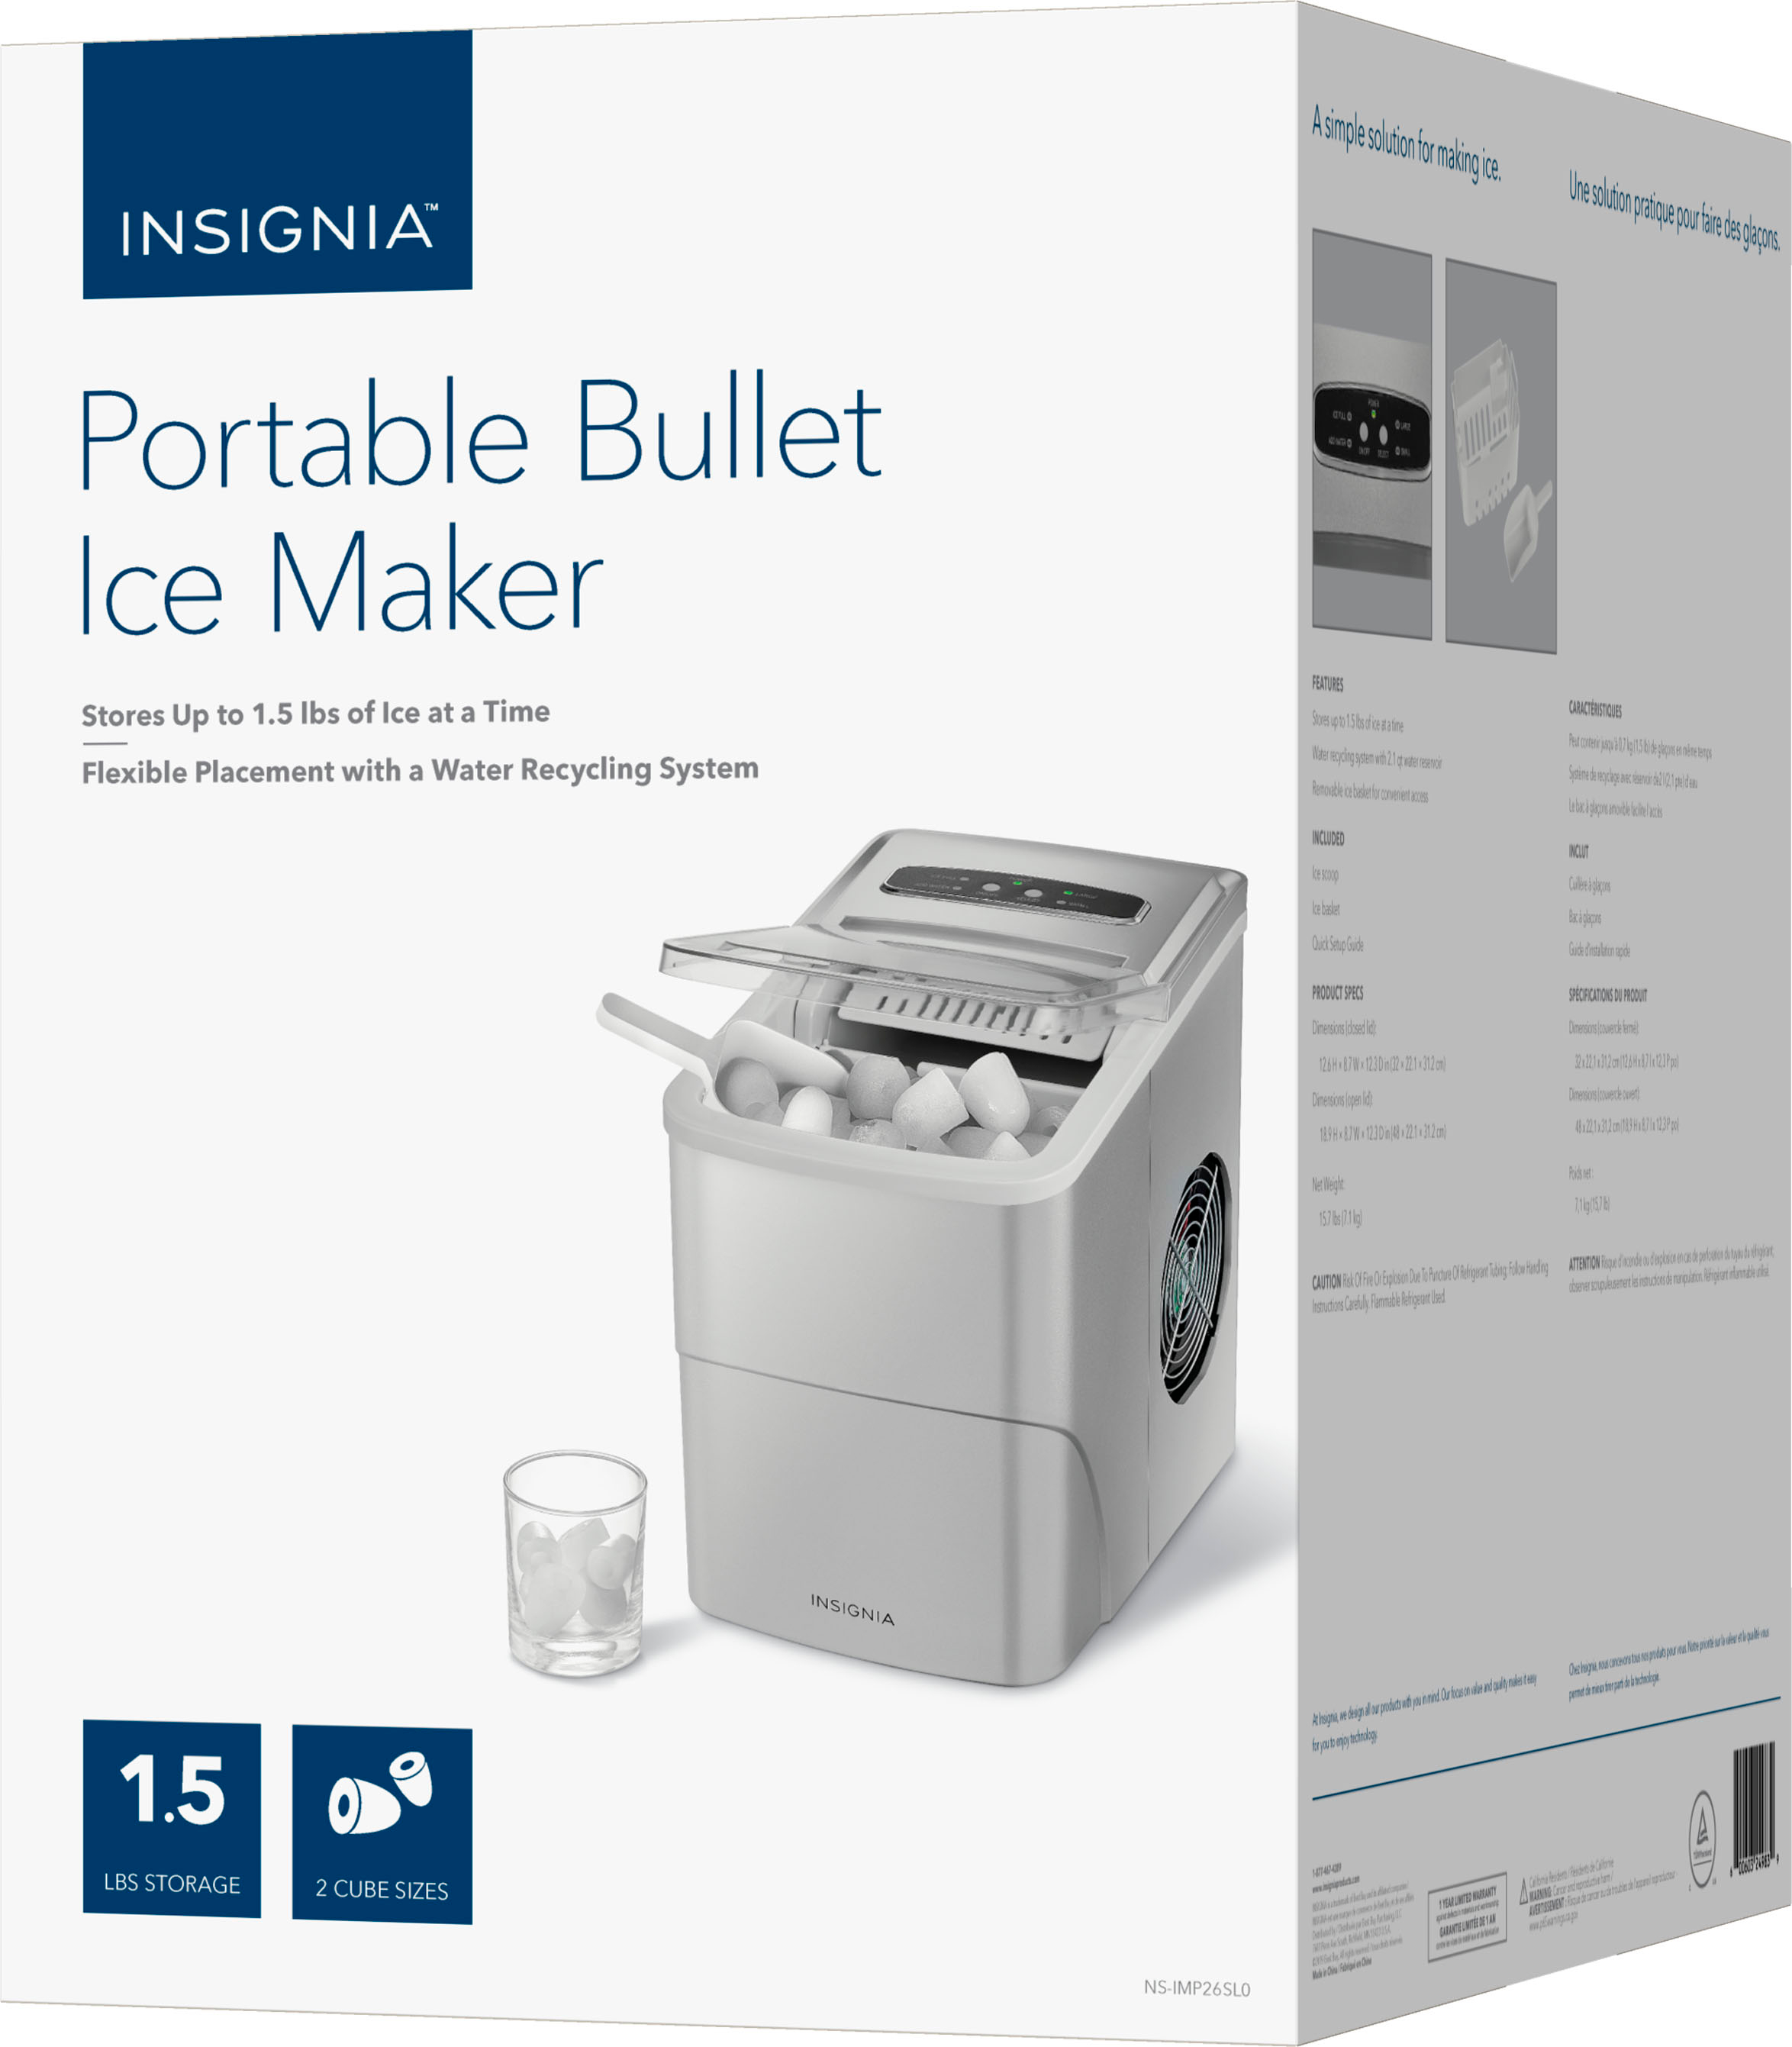 Insignia - 26-lb. Portable Ice Maker - Silver